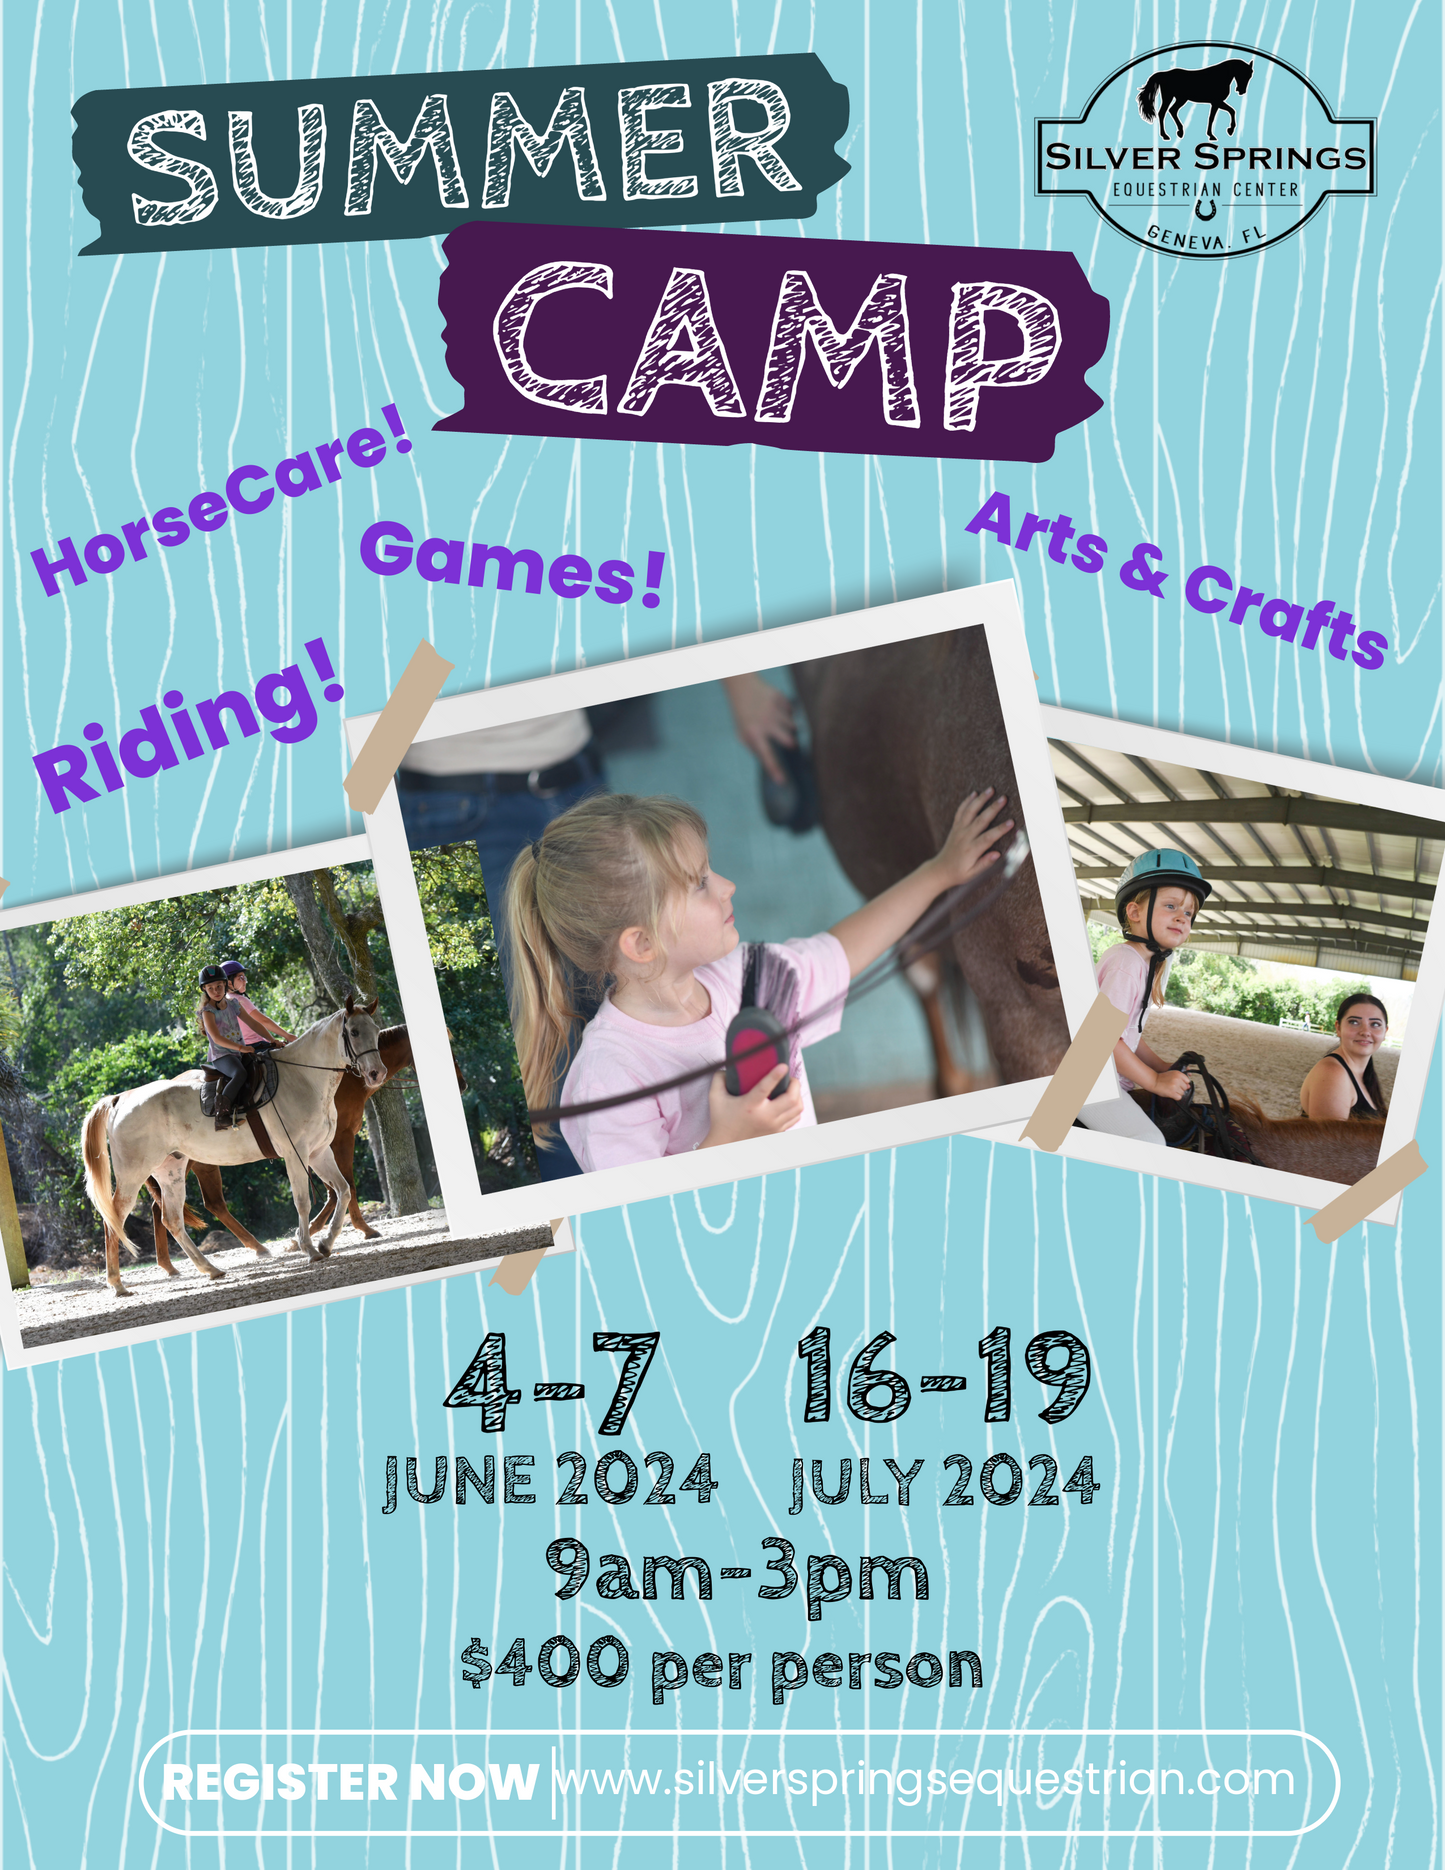 Horse Camp - June 4-7